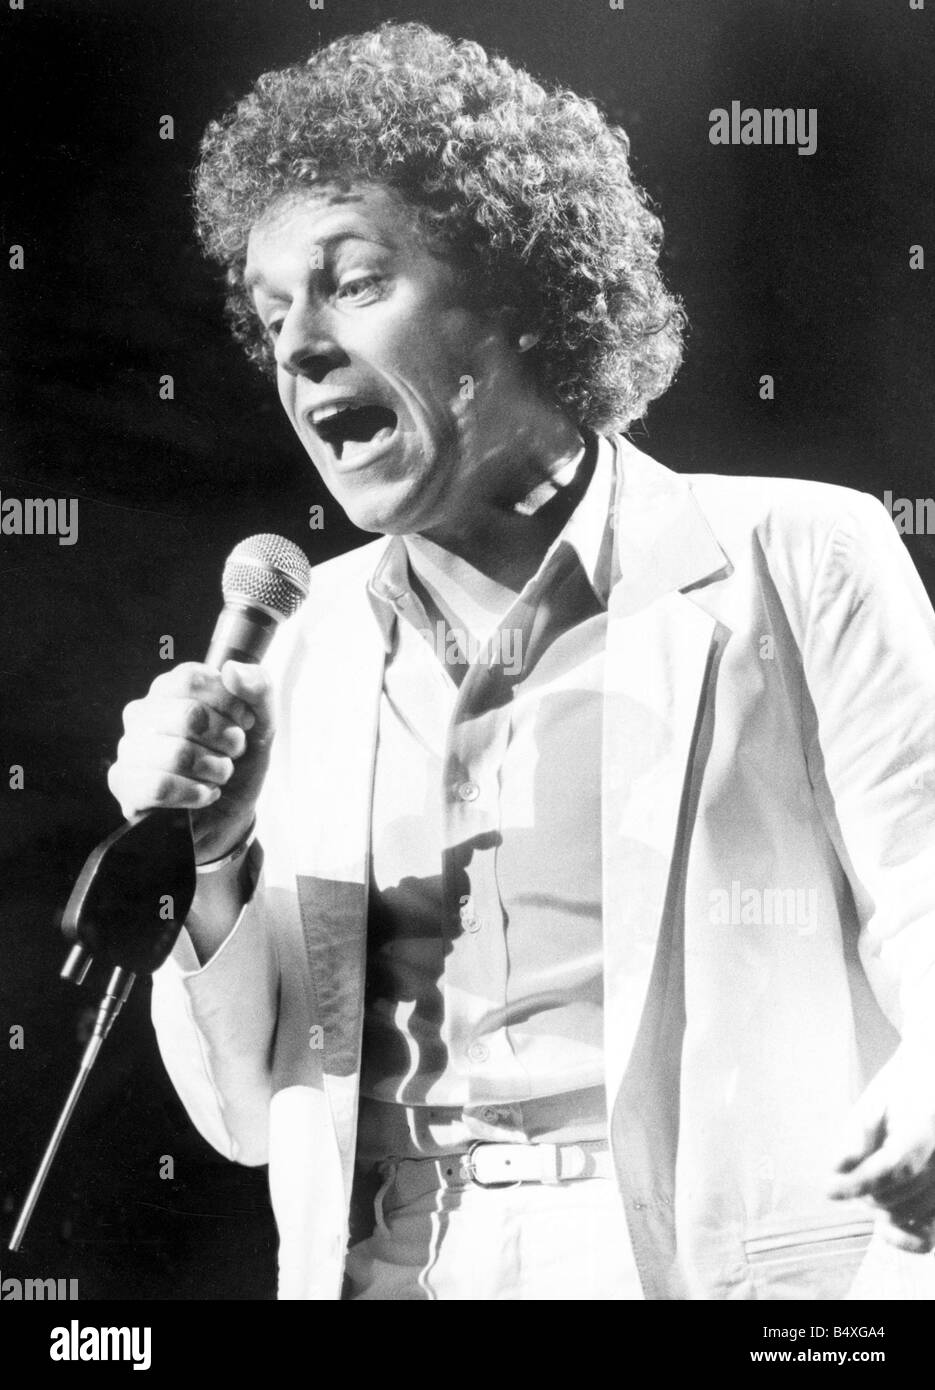 Leo Sayer in concert at Coventry's Apollo theatre&#13;&#10;23rd April 1983.&#13;&#10; Stock Photo